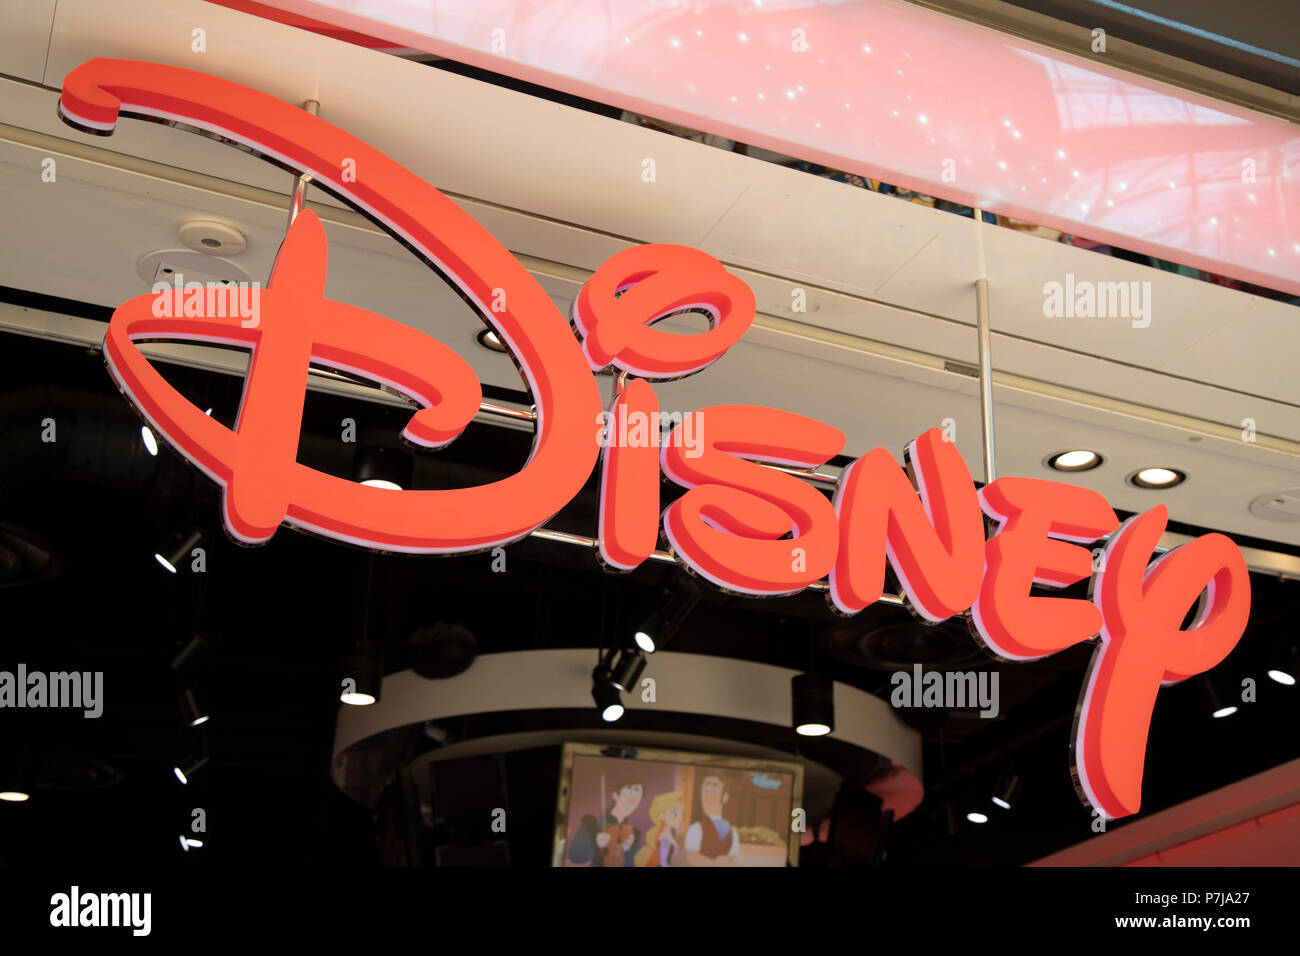 Zeichen für die Medien der Marke Disney Store in Birmingham, Vereinigtes Königreich. Die Walt Disney Company, allgemein bekannt als Walt Disney oder einfach Disney, ist ein US-amerikanischer diversifizierte multinationale Medien und Unterhaltung Konglomerat. Stockfoto